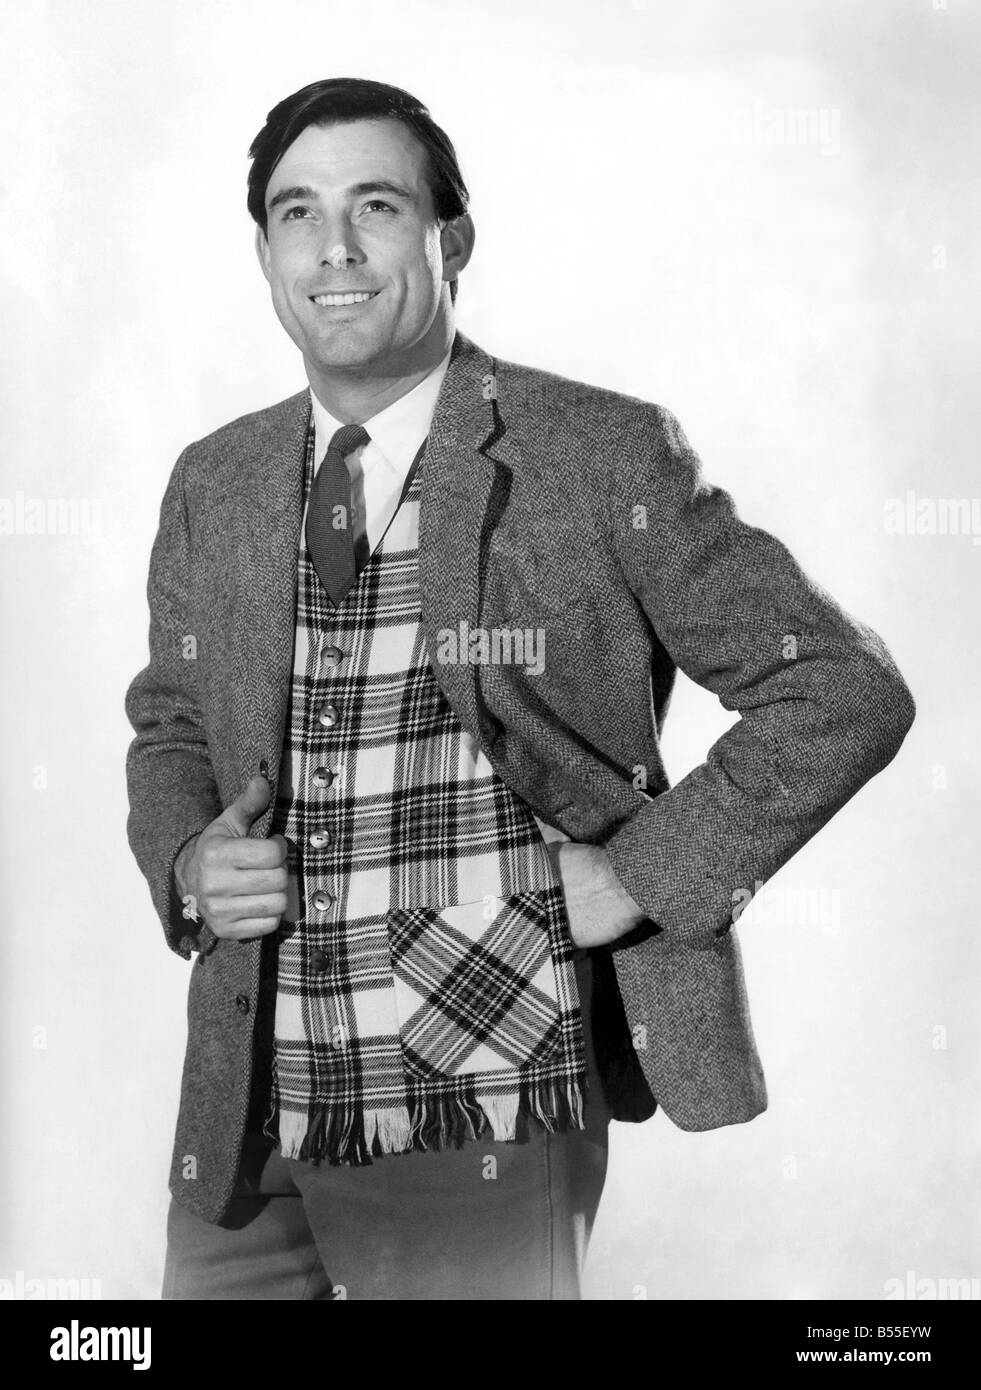 Modell Peter Anthony tragen Jackett über eine Tartan-Weste, steht Hemd und  Krawatte mit der Hand auf den Hüften. ; Februar 1961; P008753  Stockfotografie - Alamy